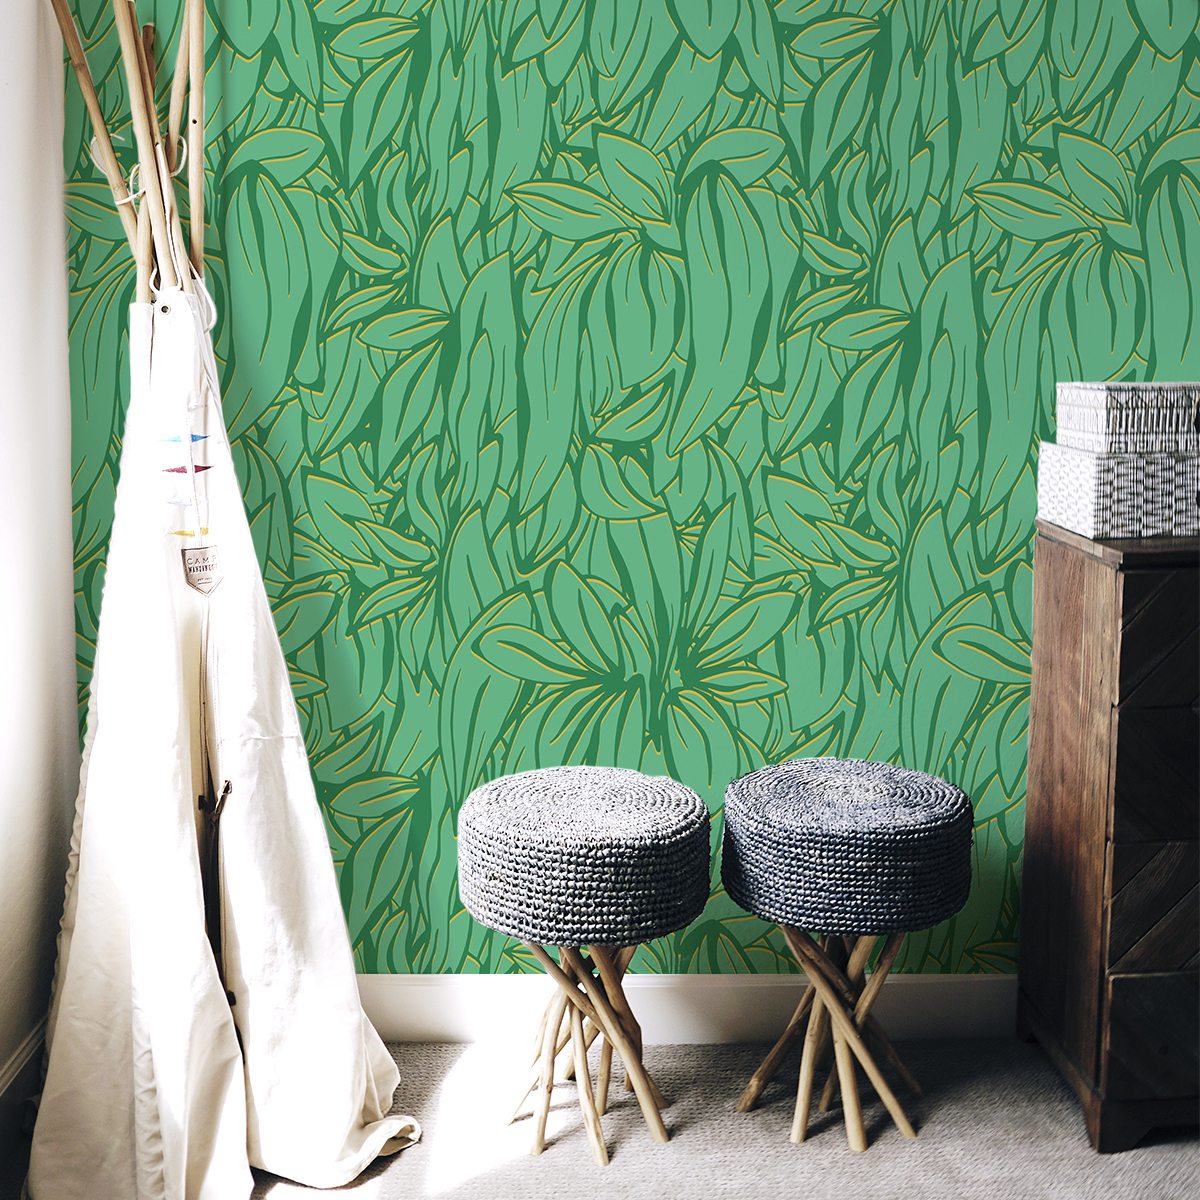 Papier peint panoramique Fantaisie végétale - Collection Lili Bambou Design - Acte-Deco